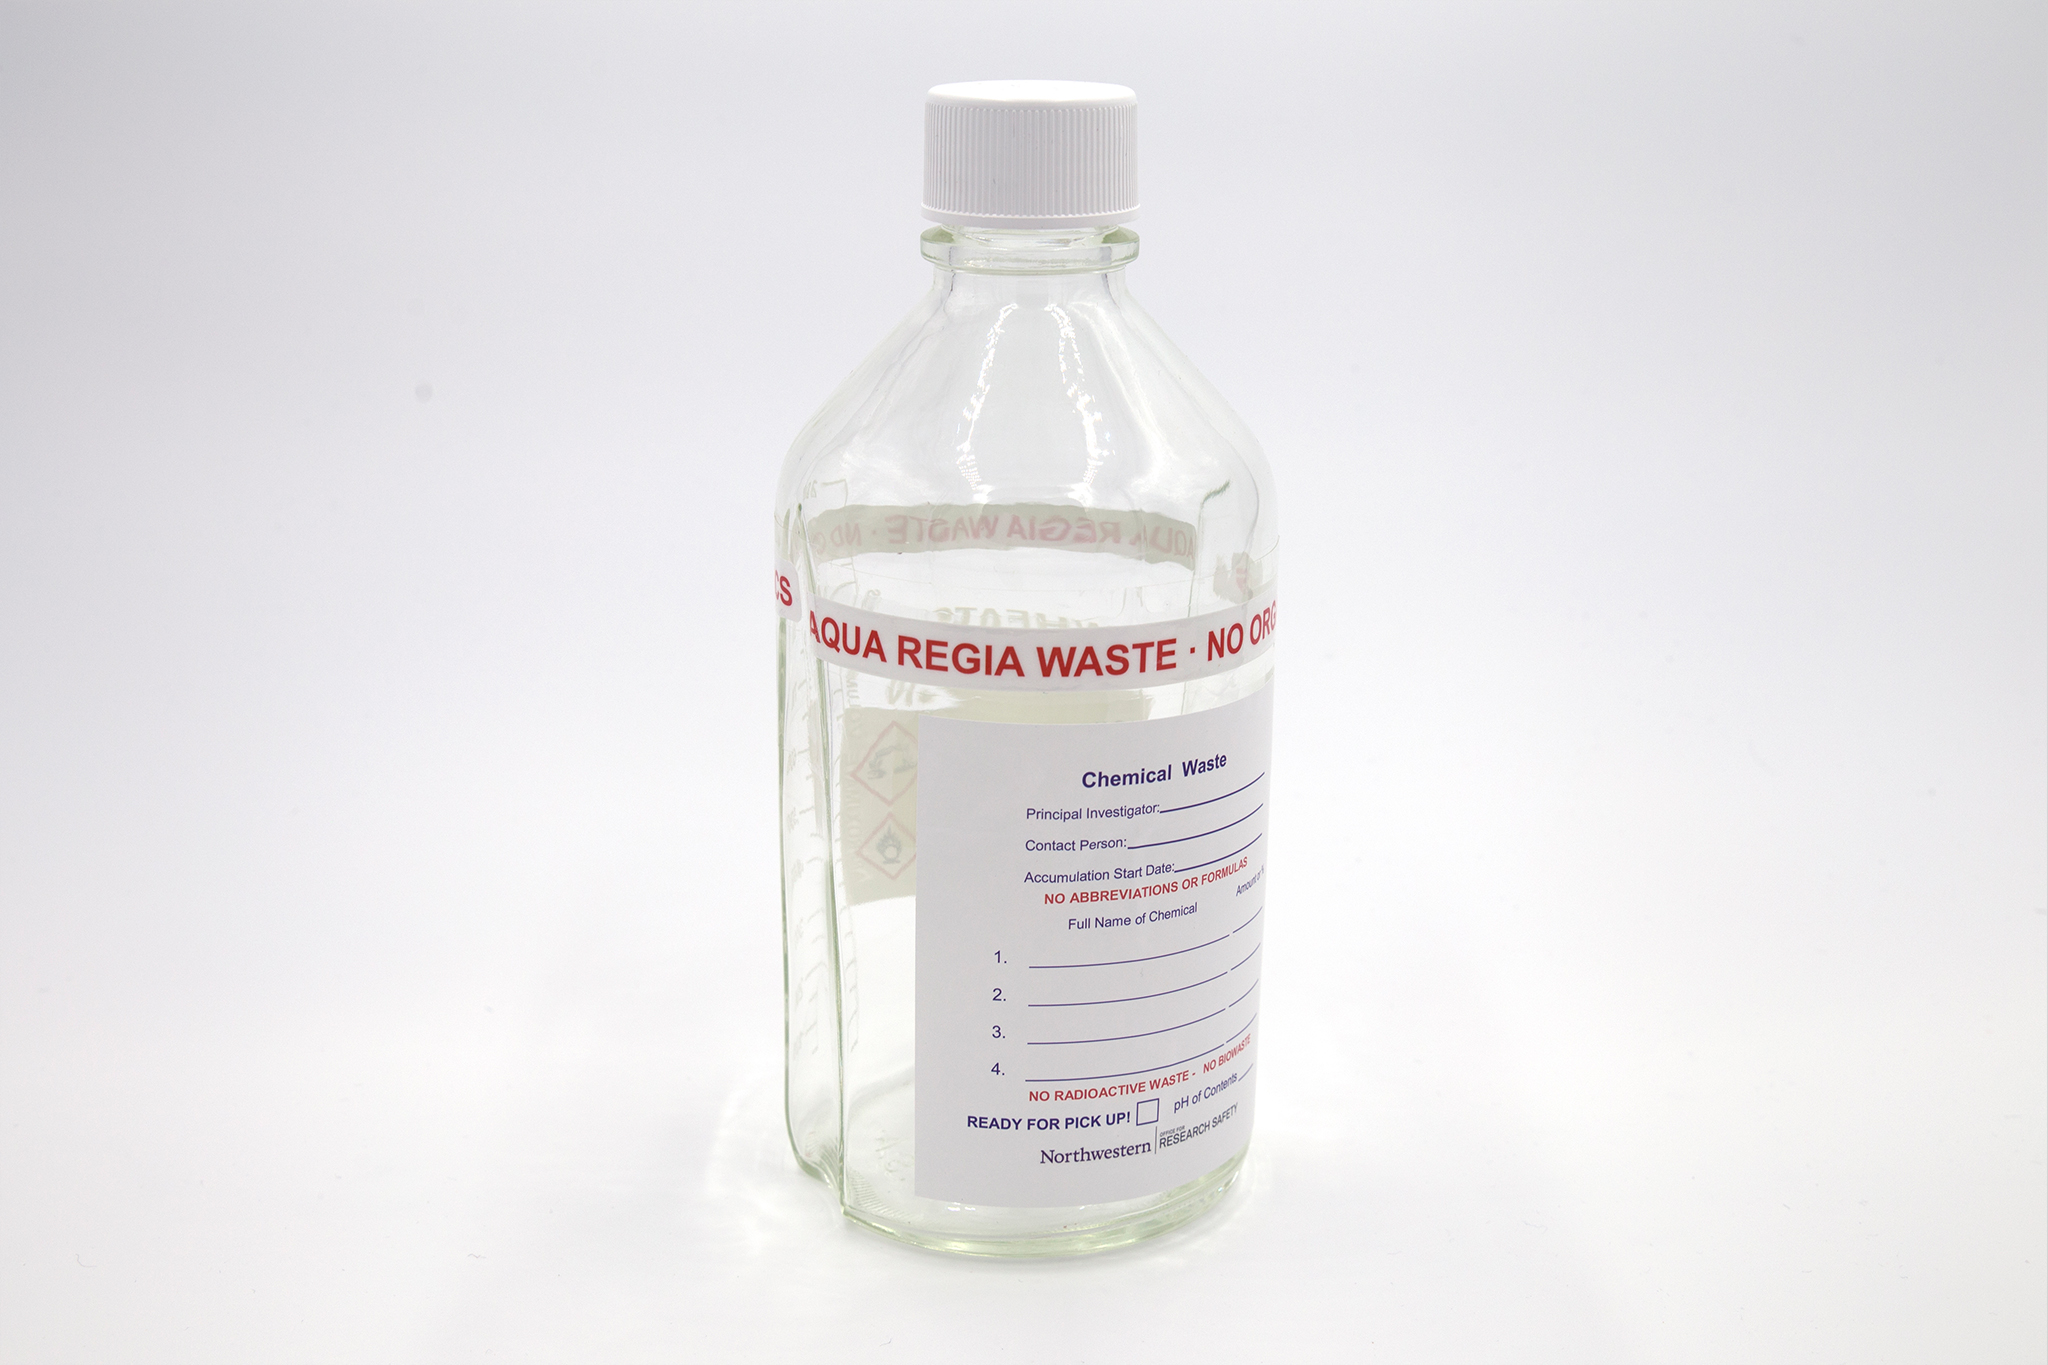 Glass bottle with aqua regia label